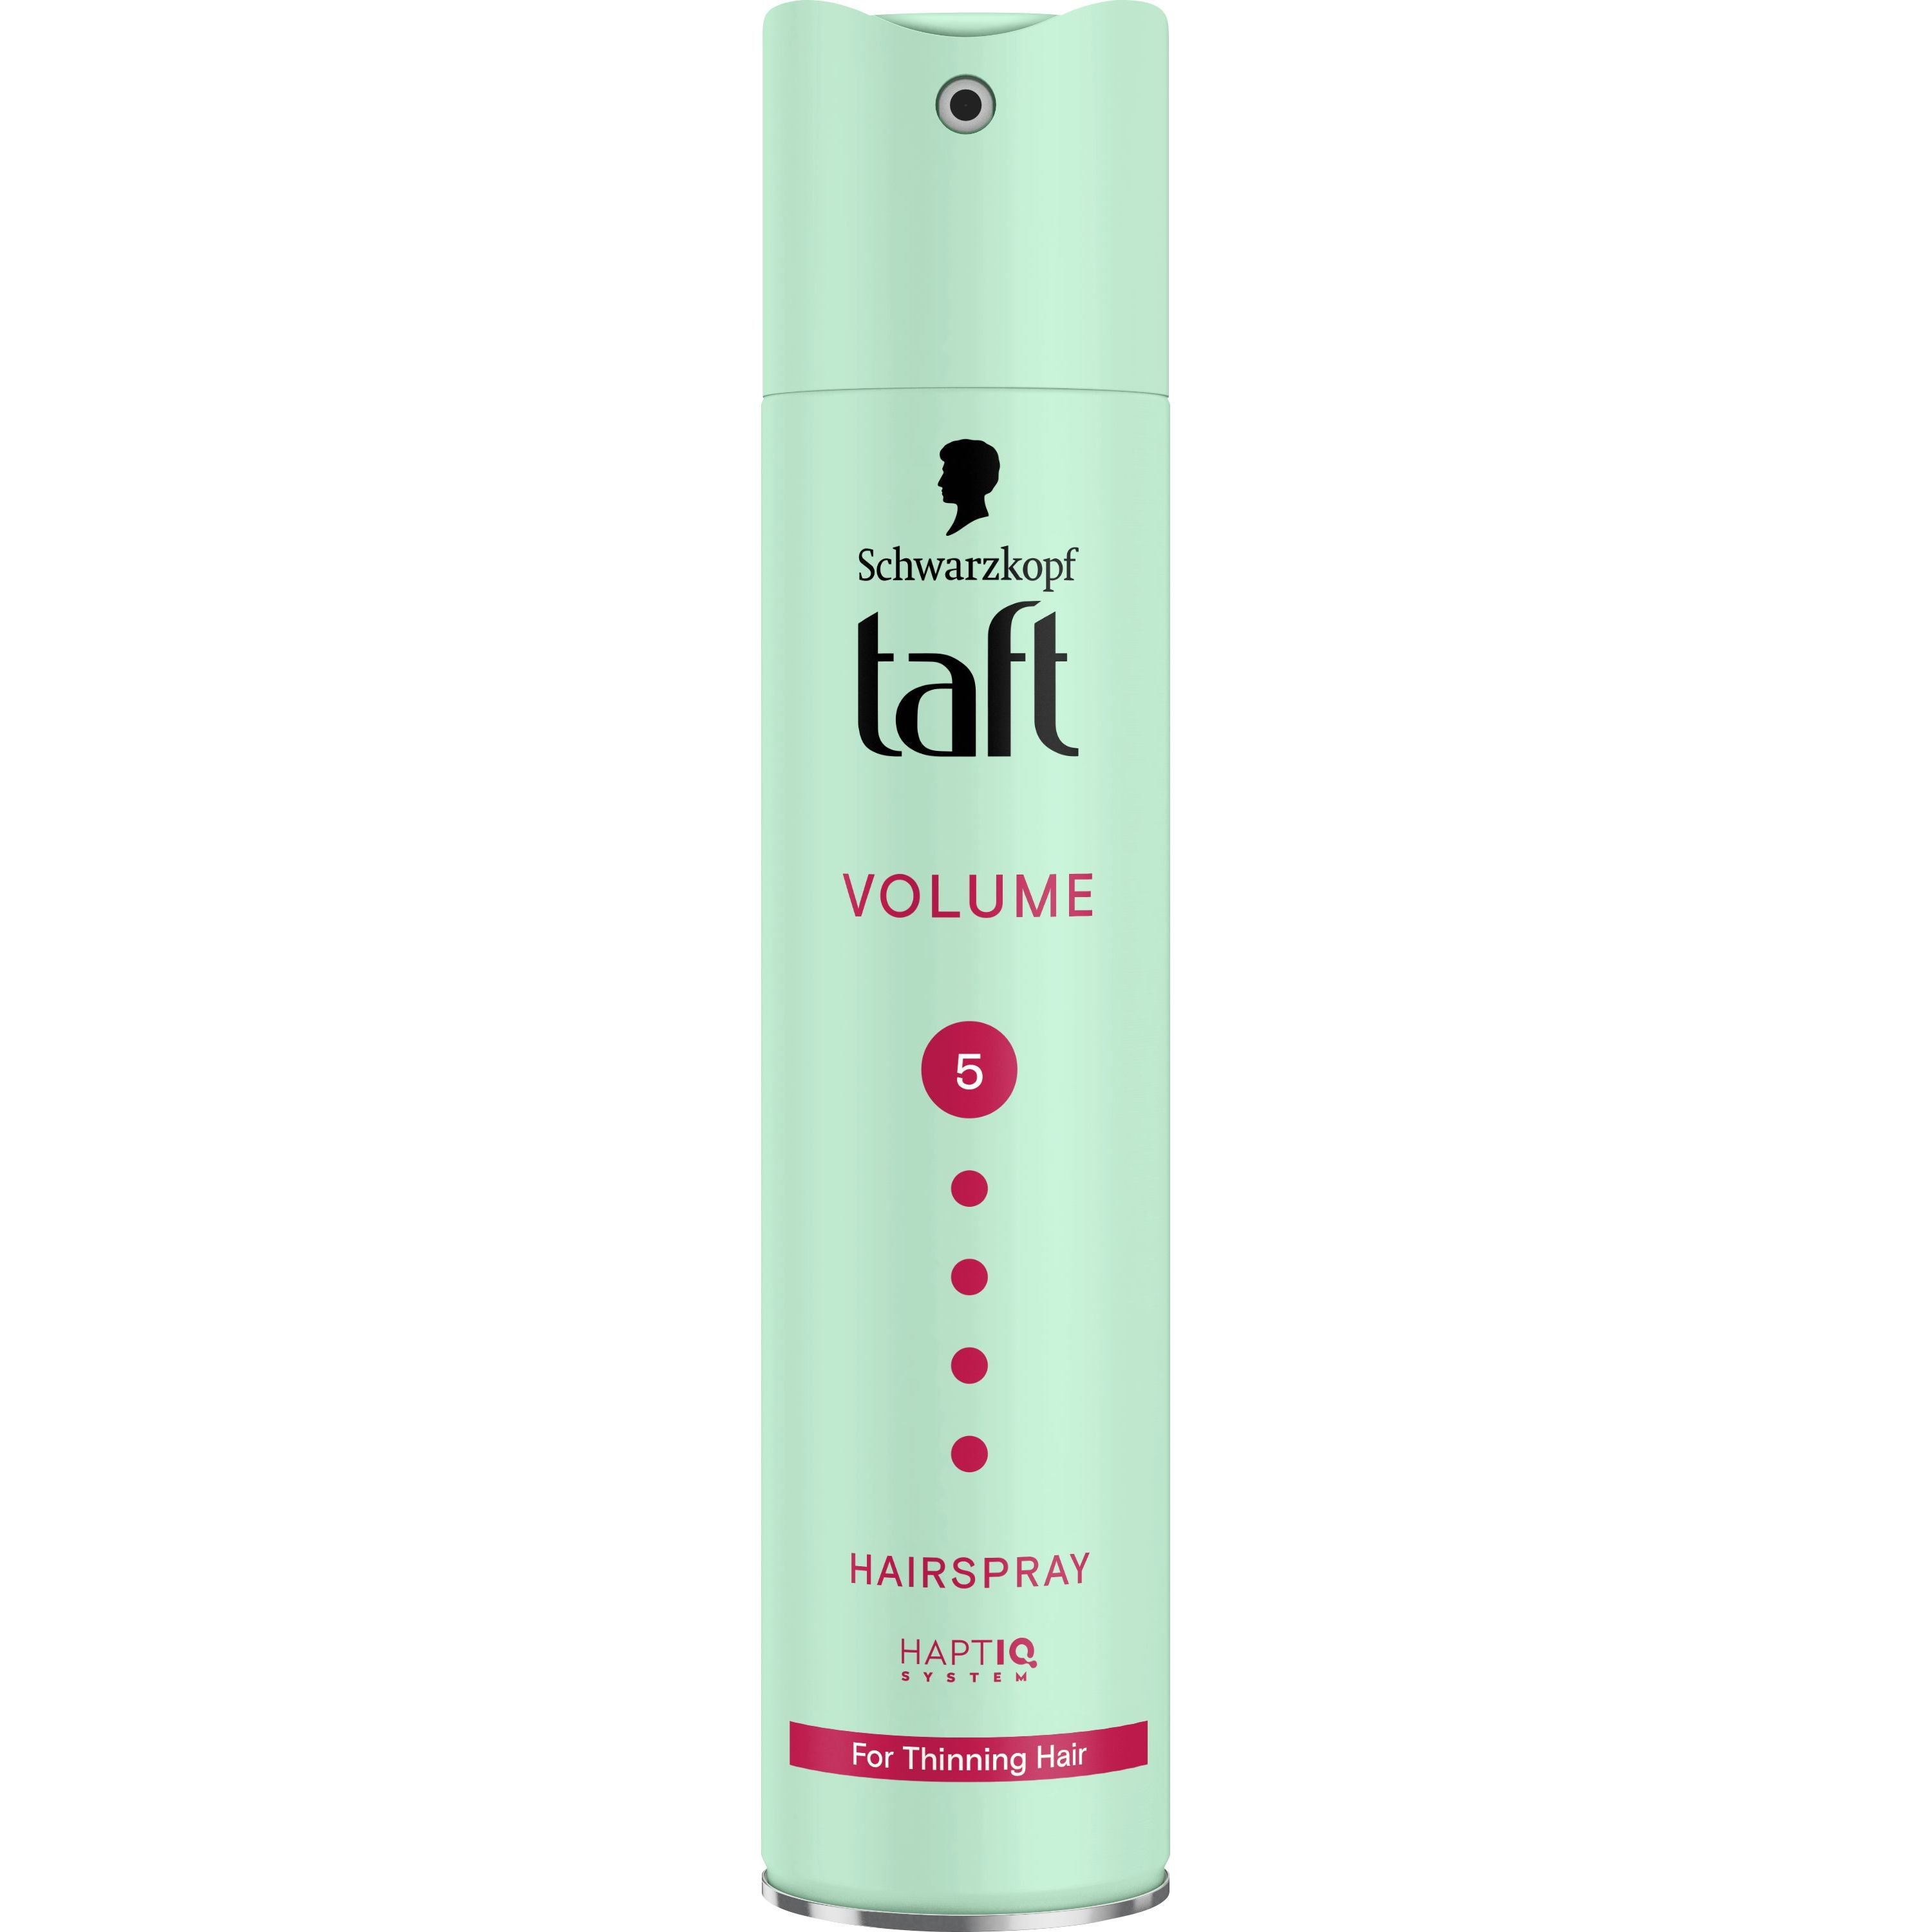 Лак Taft Volume 5 для нормальных и тонких волос 250 мл - фото 1